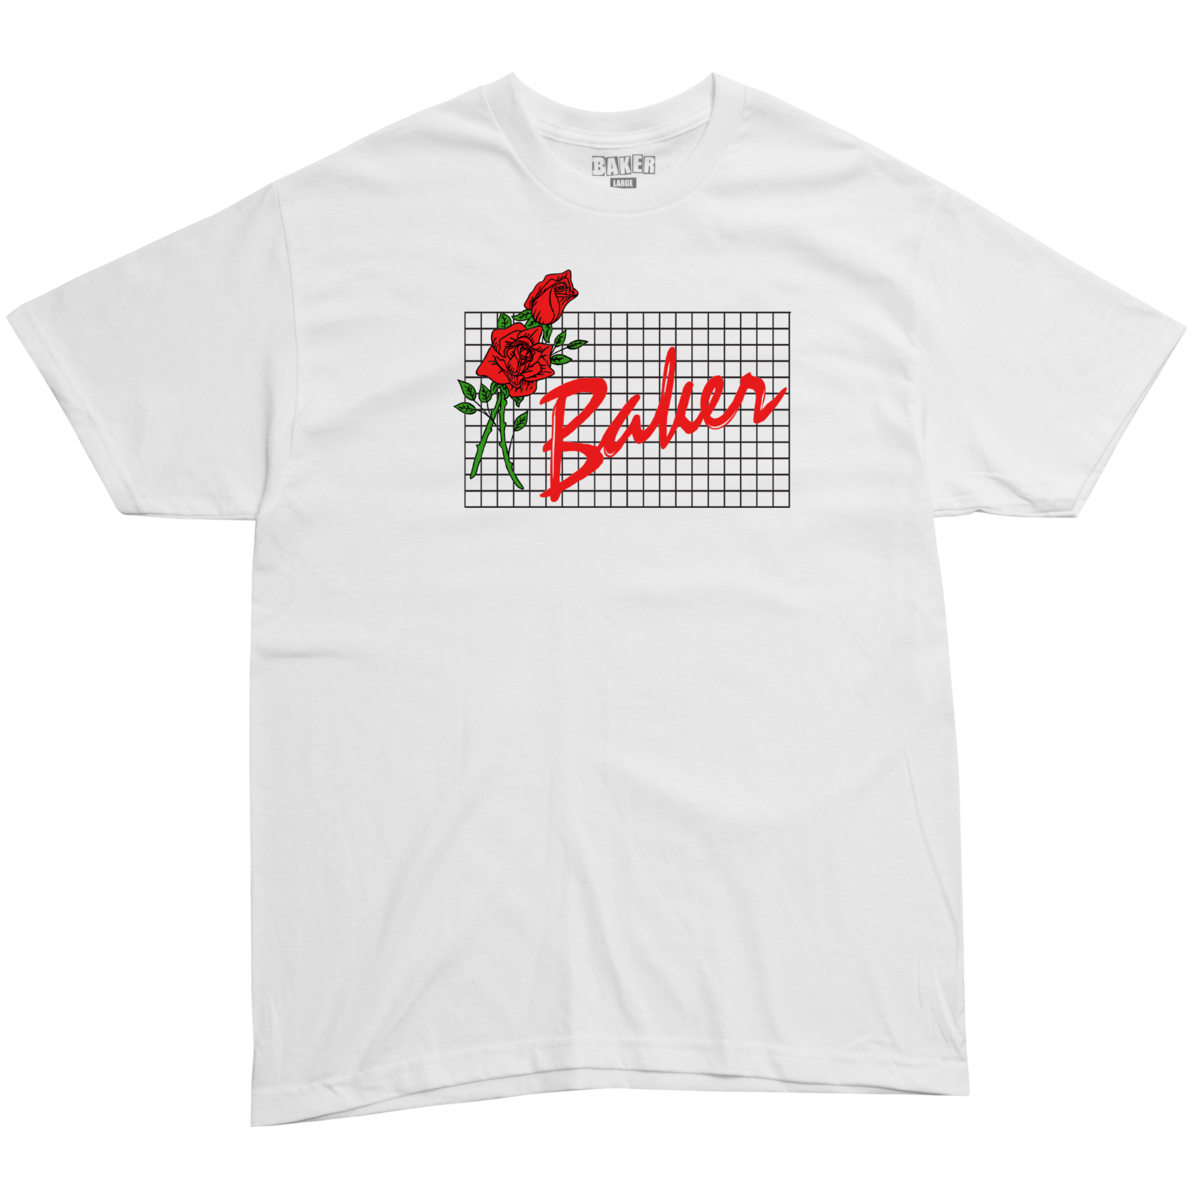 Baker Roses White S/S Shirt